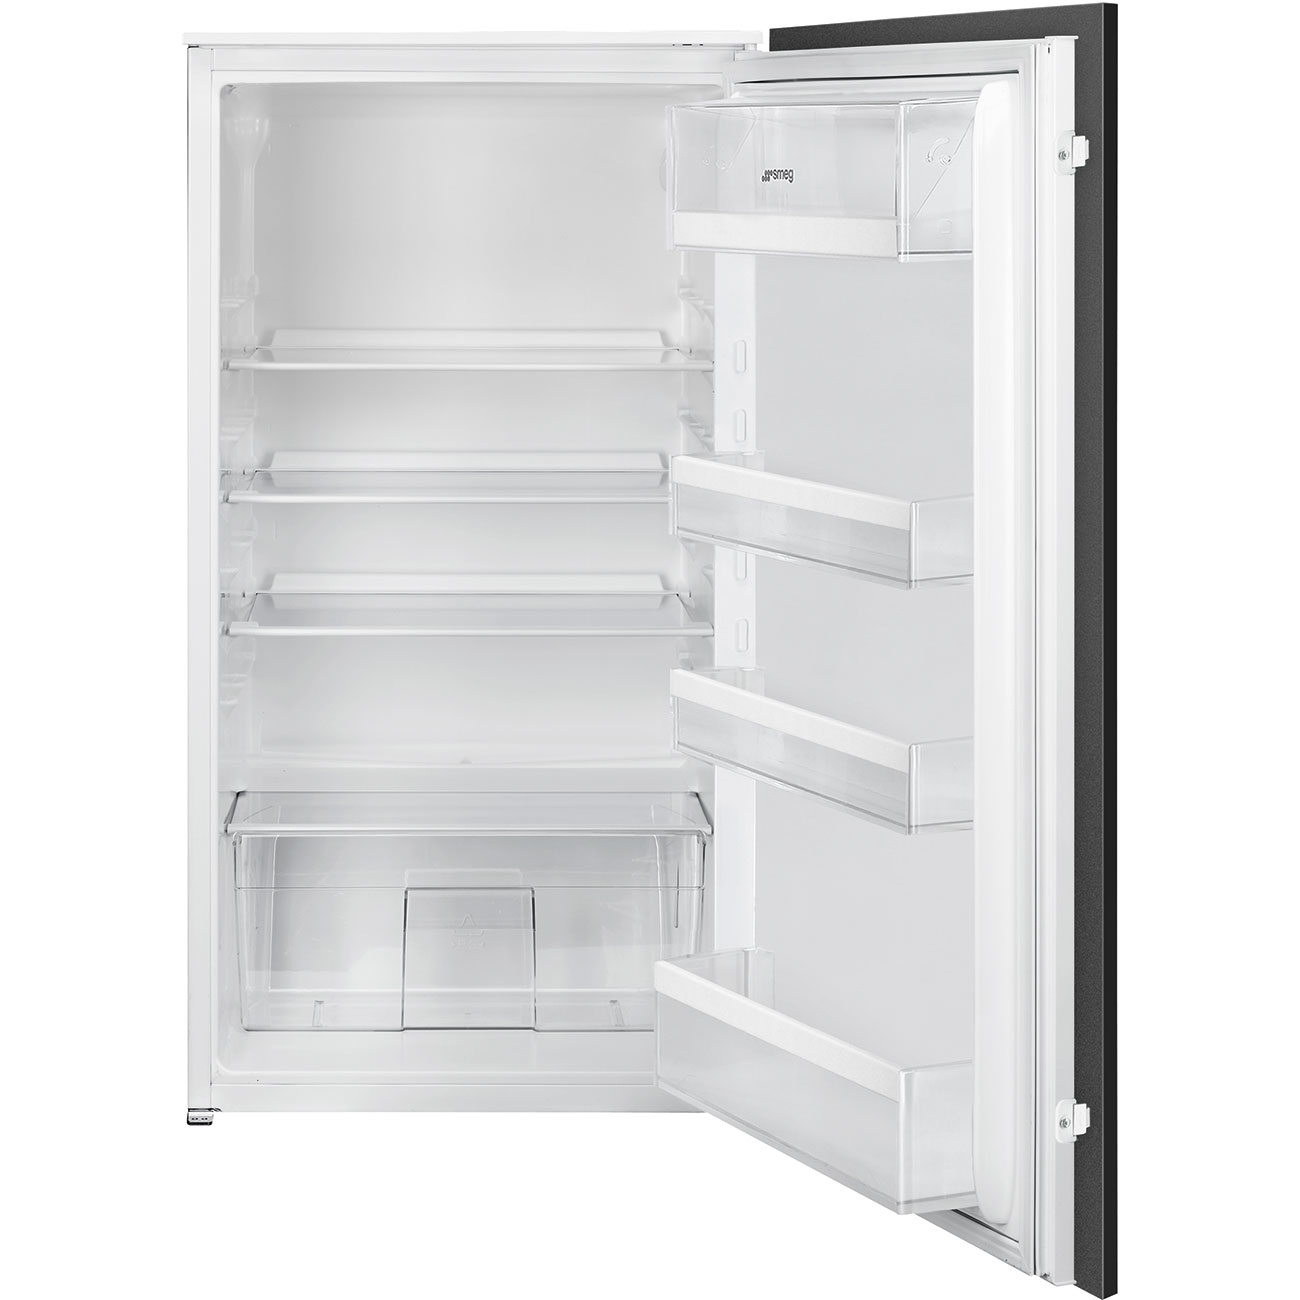 One Door Built-in refrigerator - Smeg_1